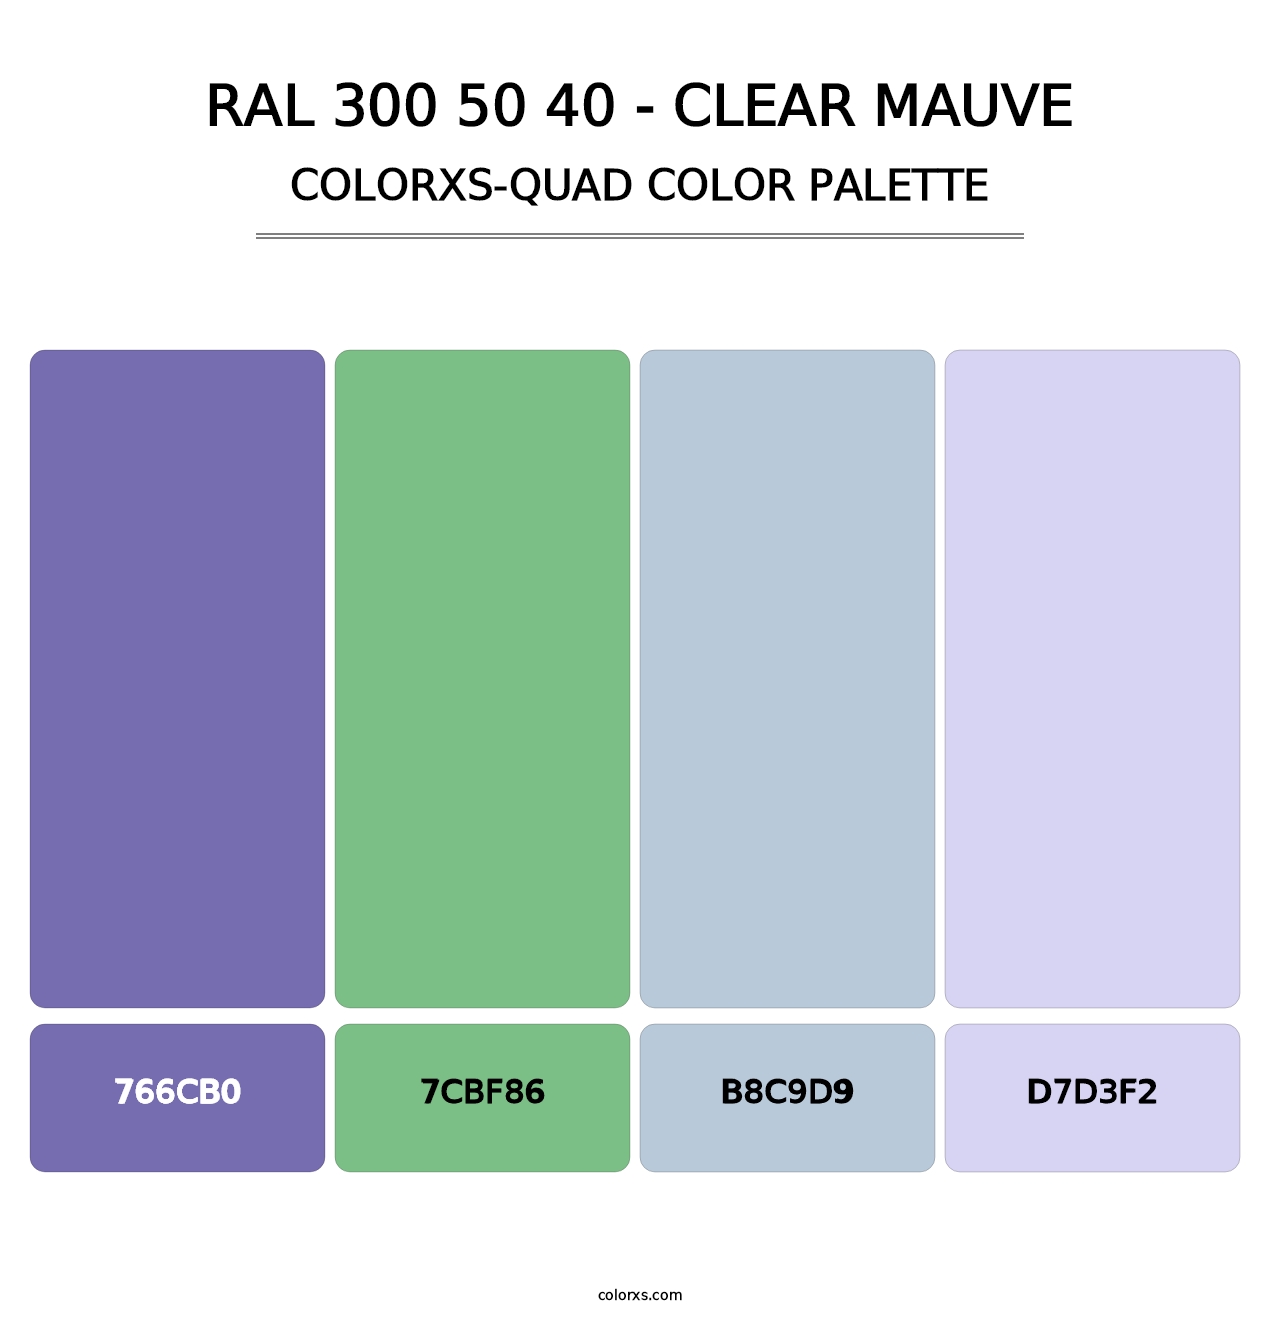 RAL 300 50 40 - Clear Mauve - Colorxs Quad Palette